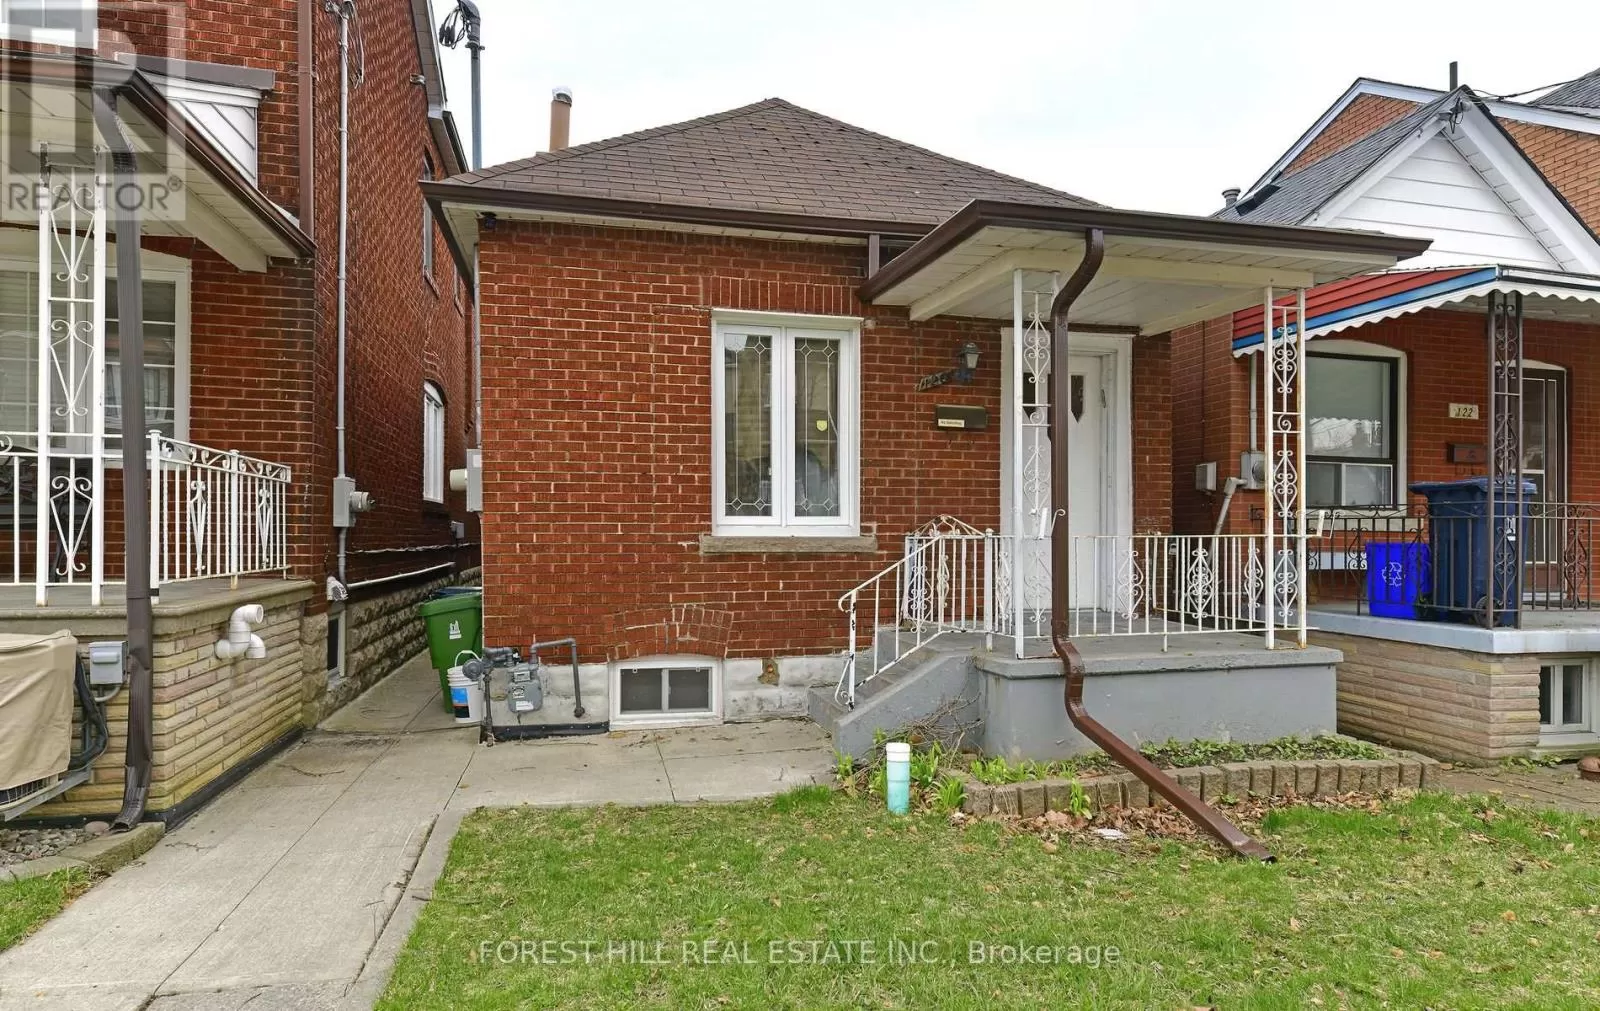 House for rent: 120 Earlscourt Avenue, Toronto, Ontario M6E 3A6